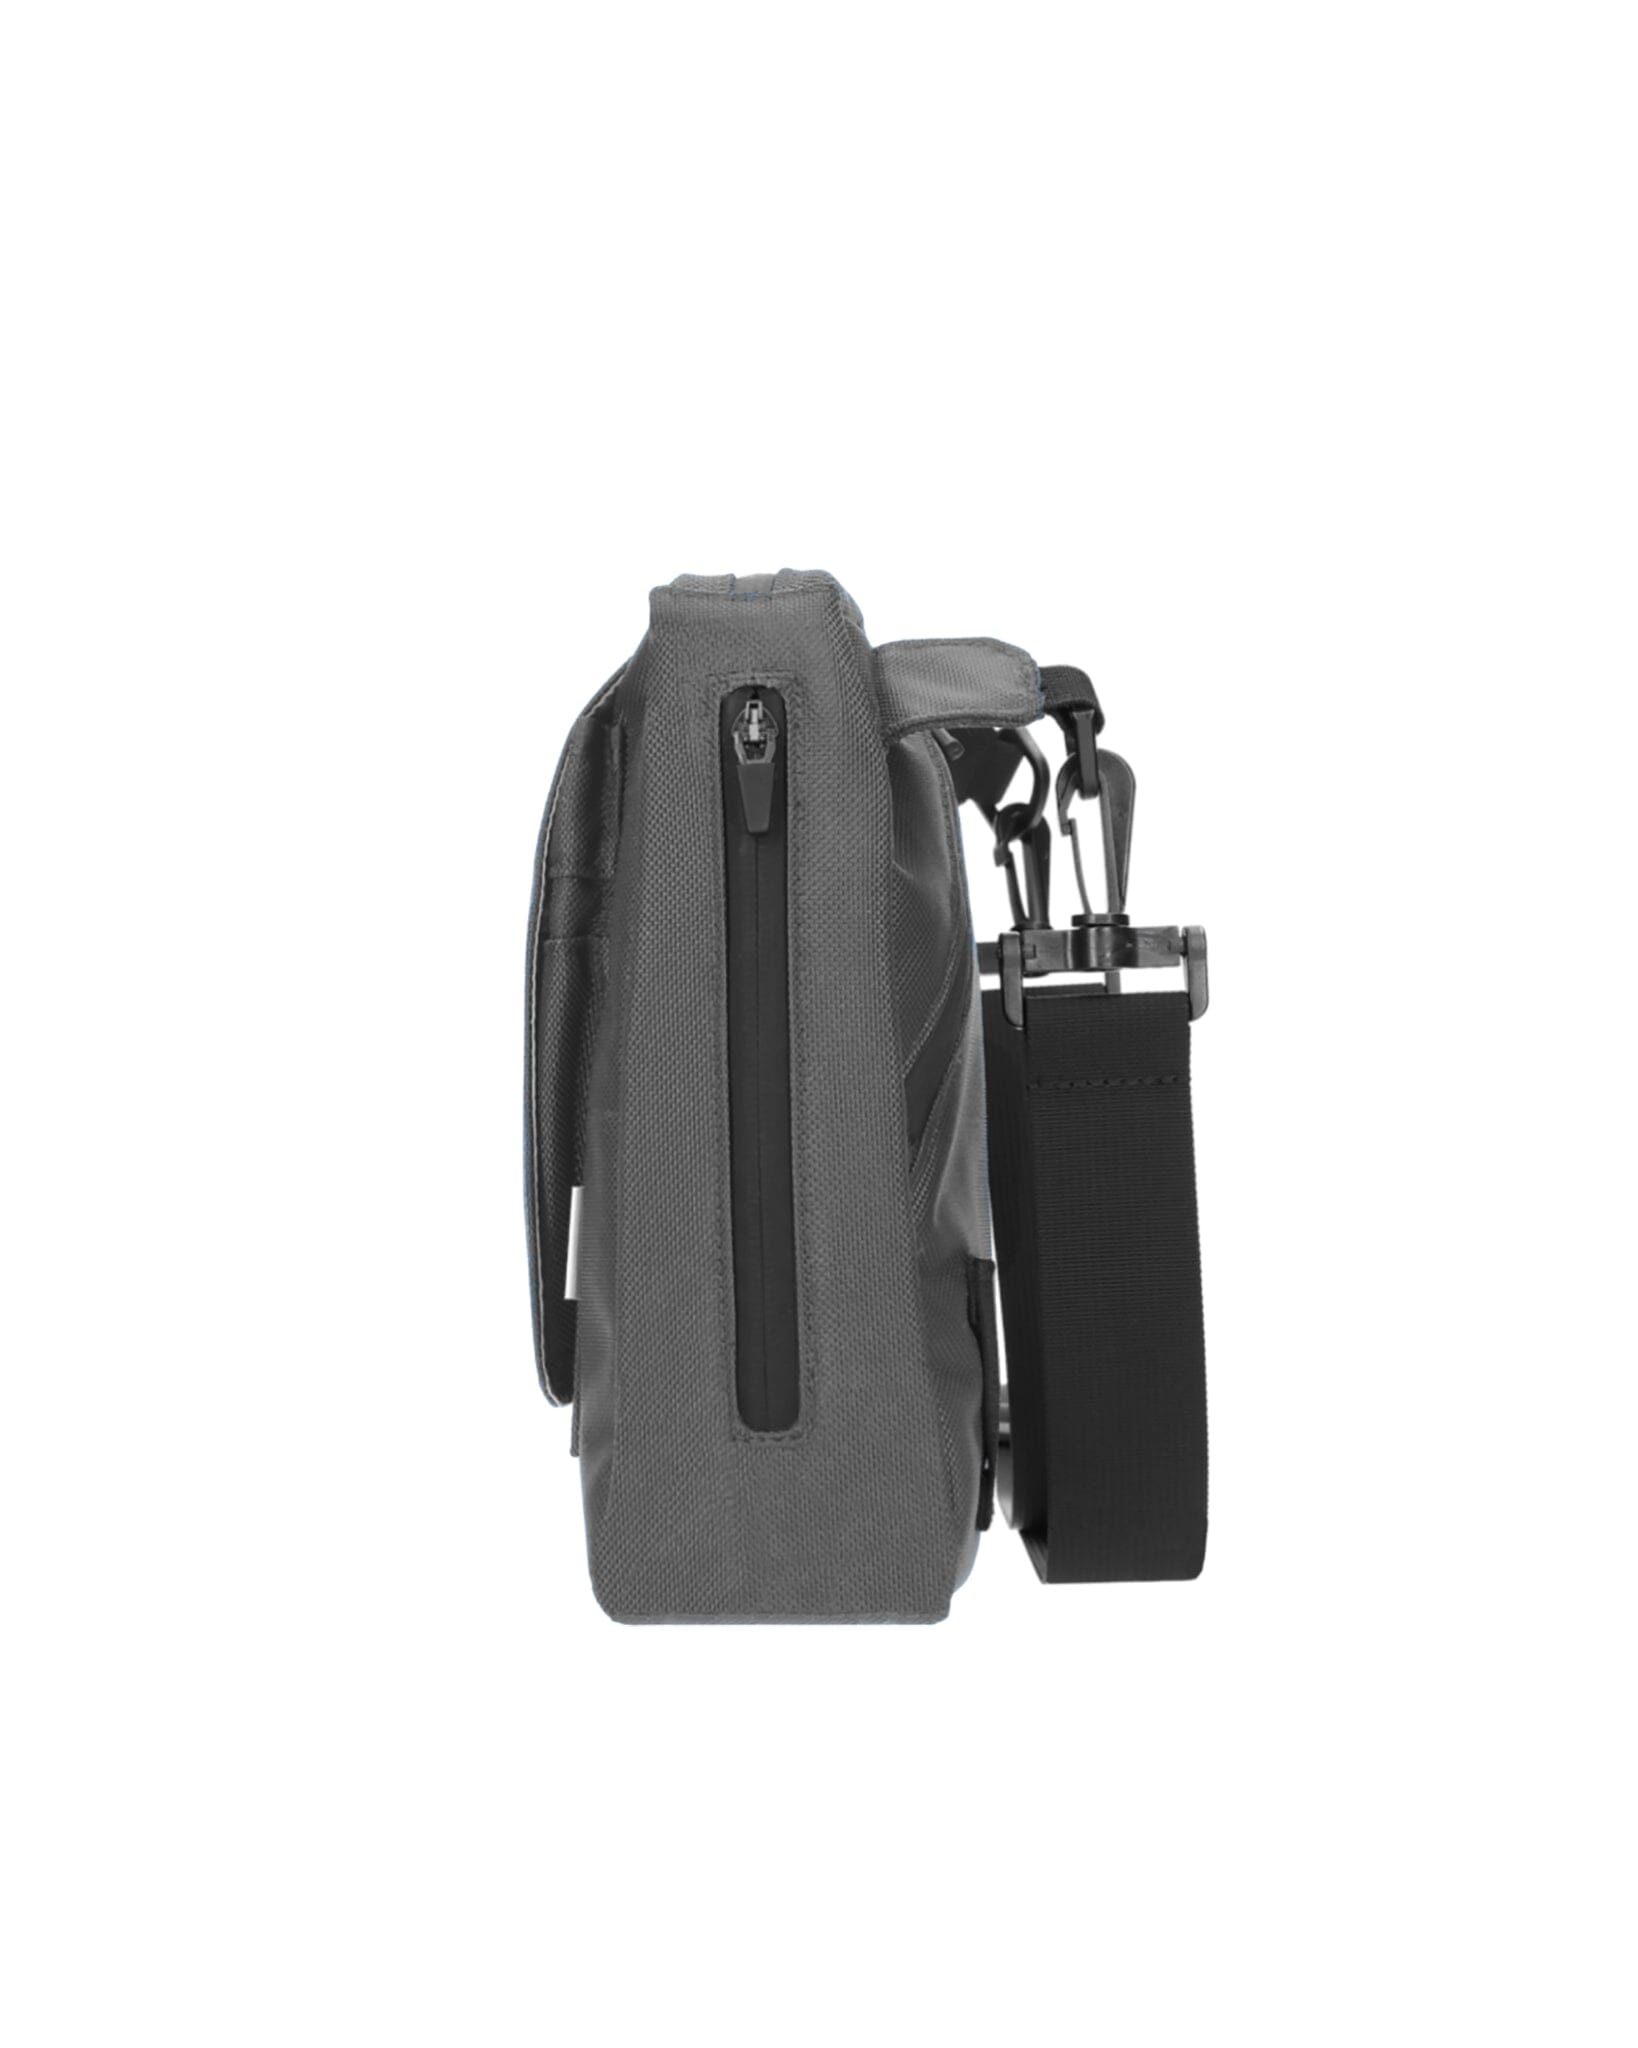 Small Carry - Grey Matter Bag bolstr   